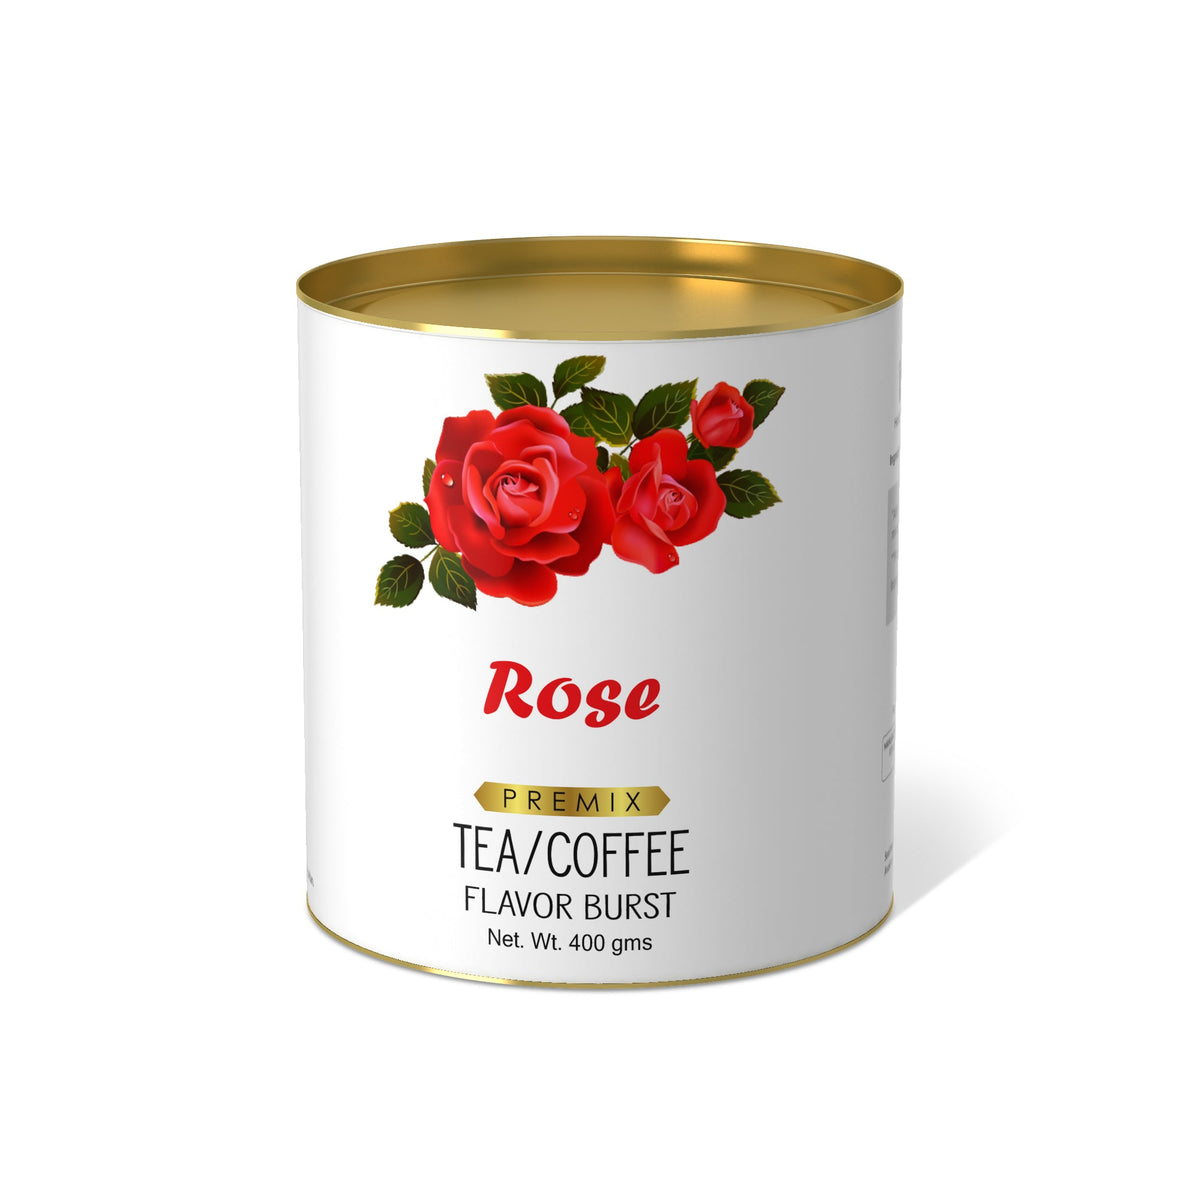 Rose Flavor Burst